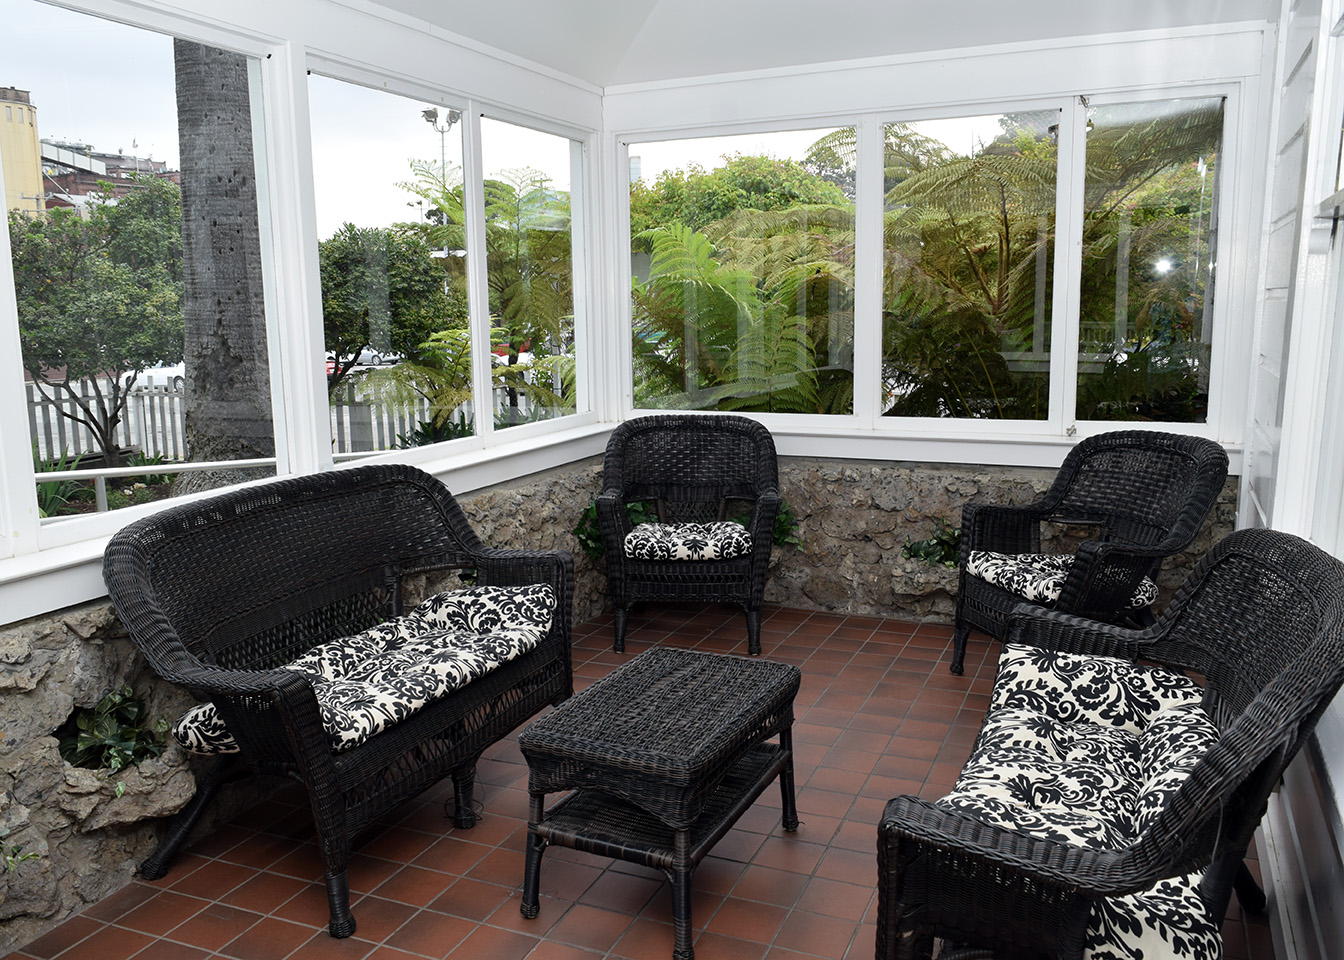 Interior: Porch veranda sitting area